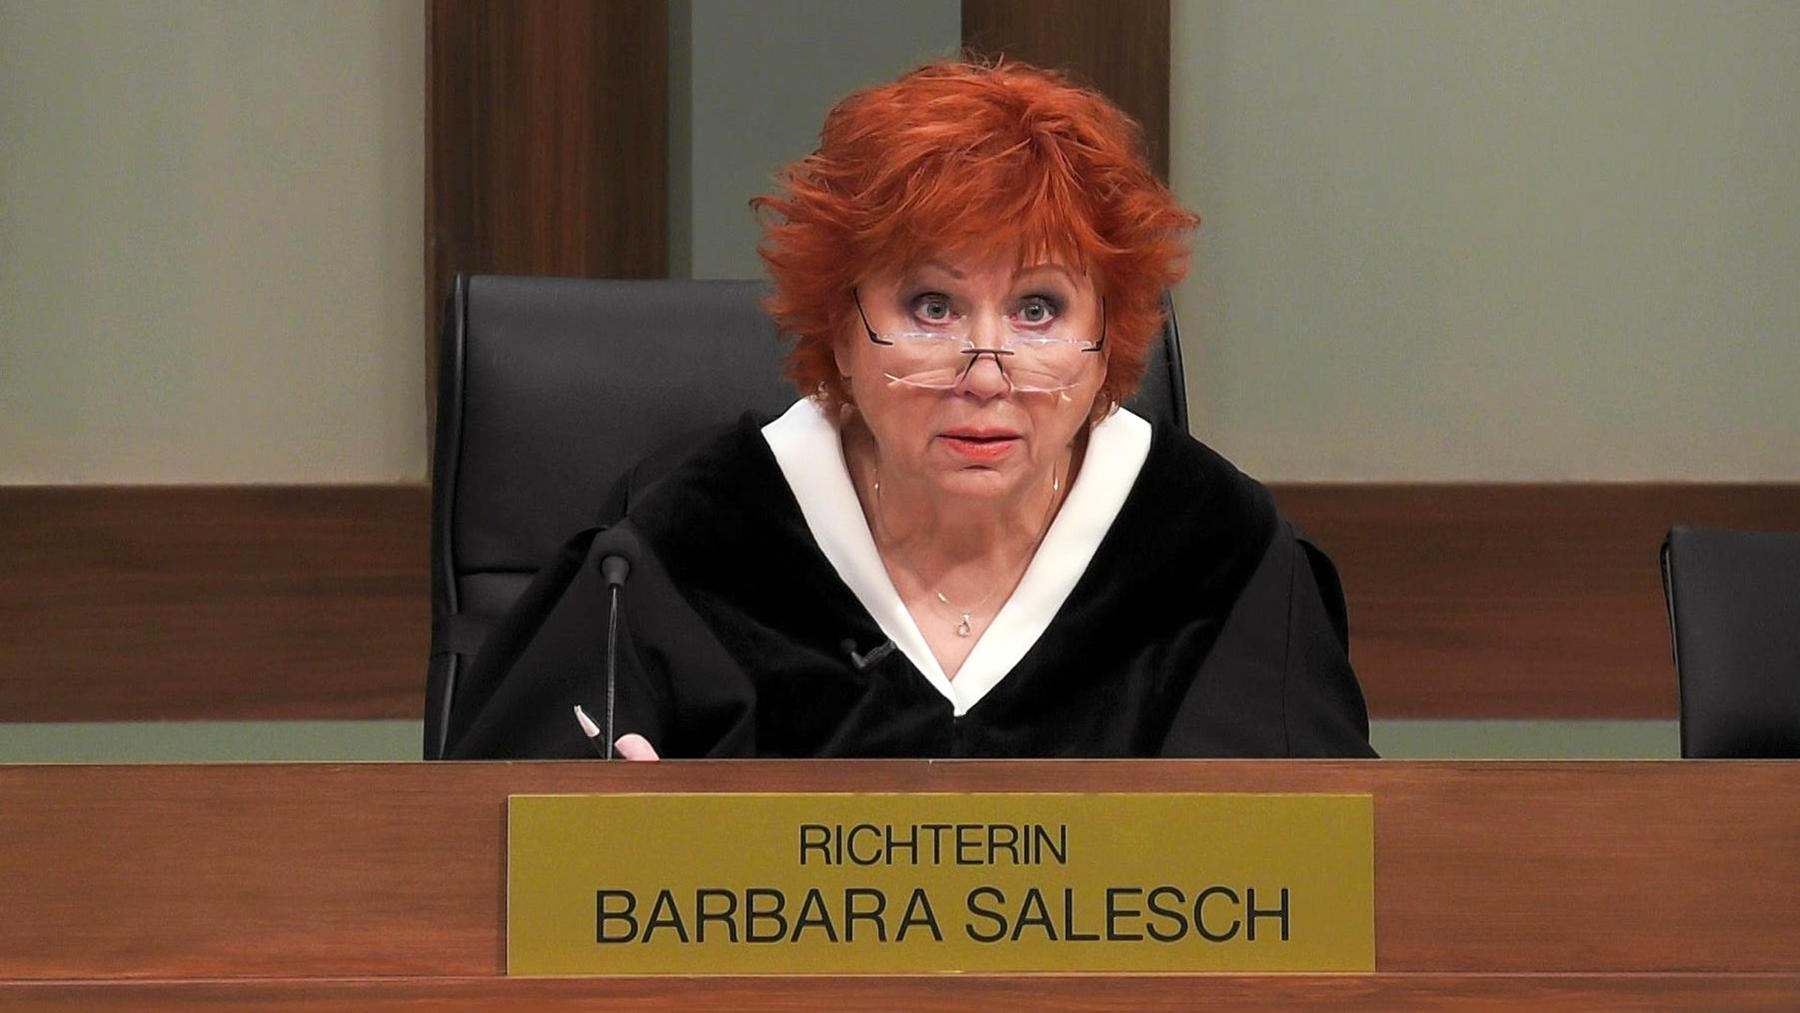 Folge 4 vom 24.11.2022 | Barbara Salesch - Das Strafgericht | RTL+